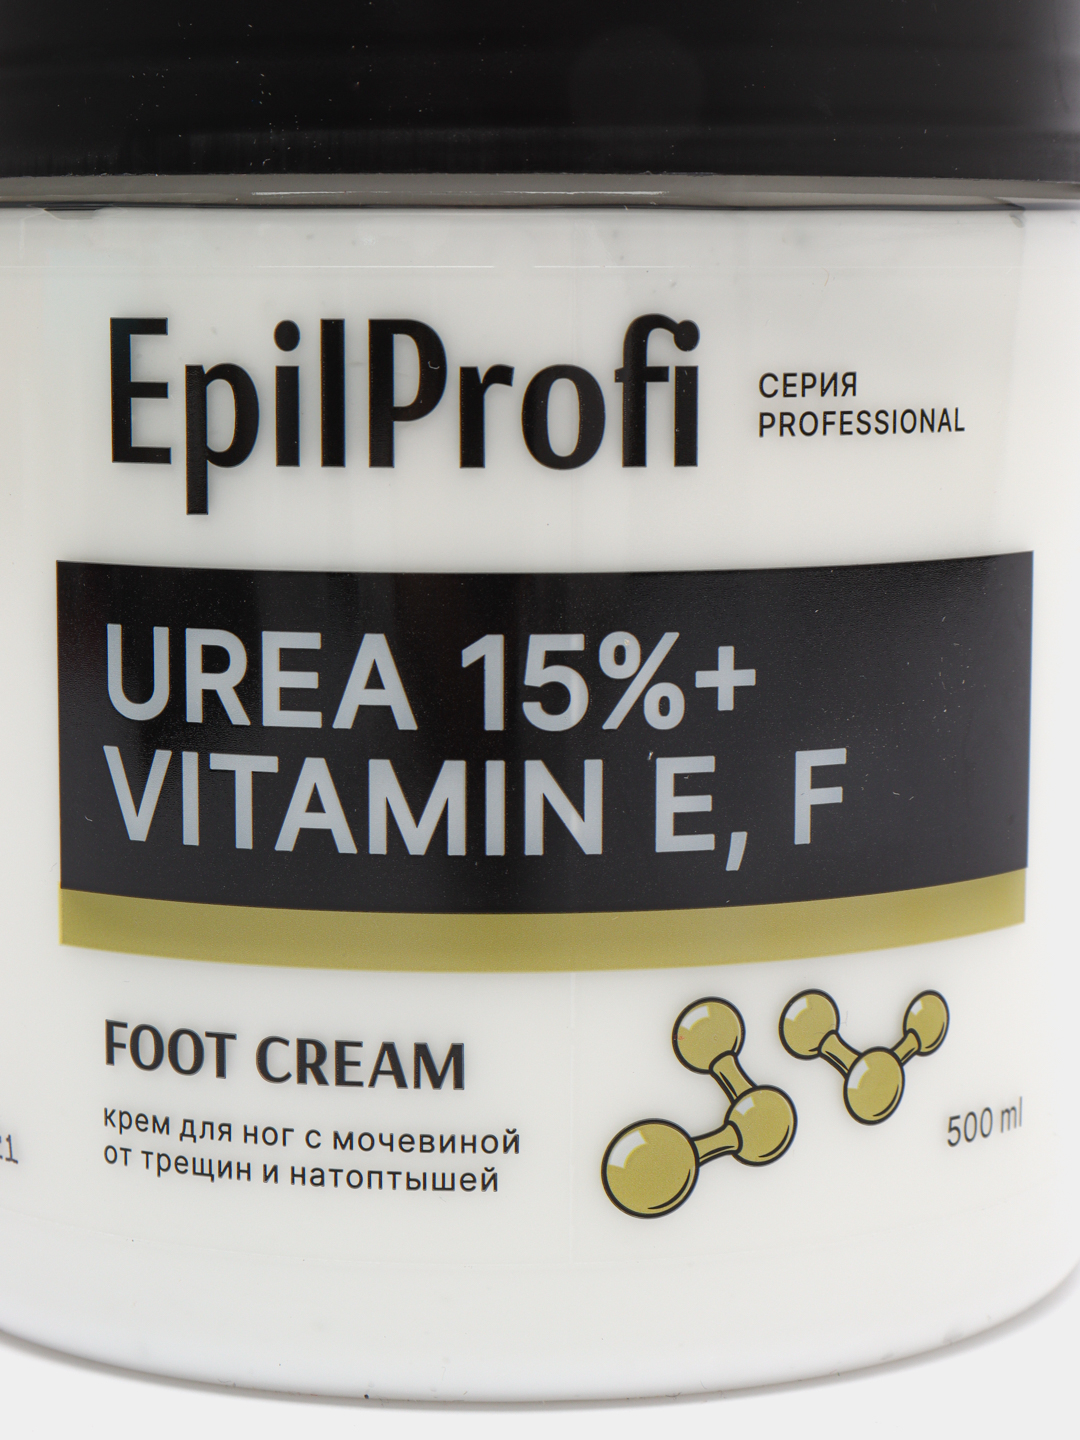 Epilprofi крем для лица. Крем воск от трещин для очень сухой кожи epilprofi. Крем воск epilprofi для ног. Epilprofi крем-воск от трещин купить в Москве.